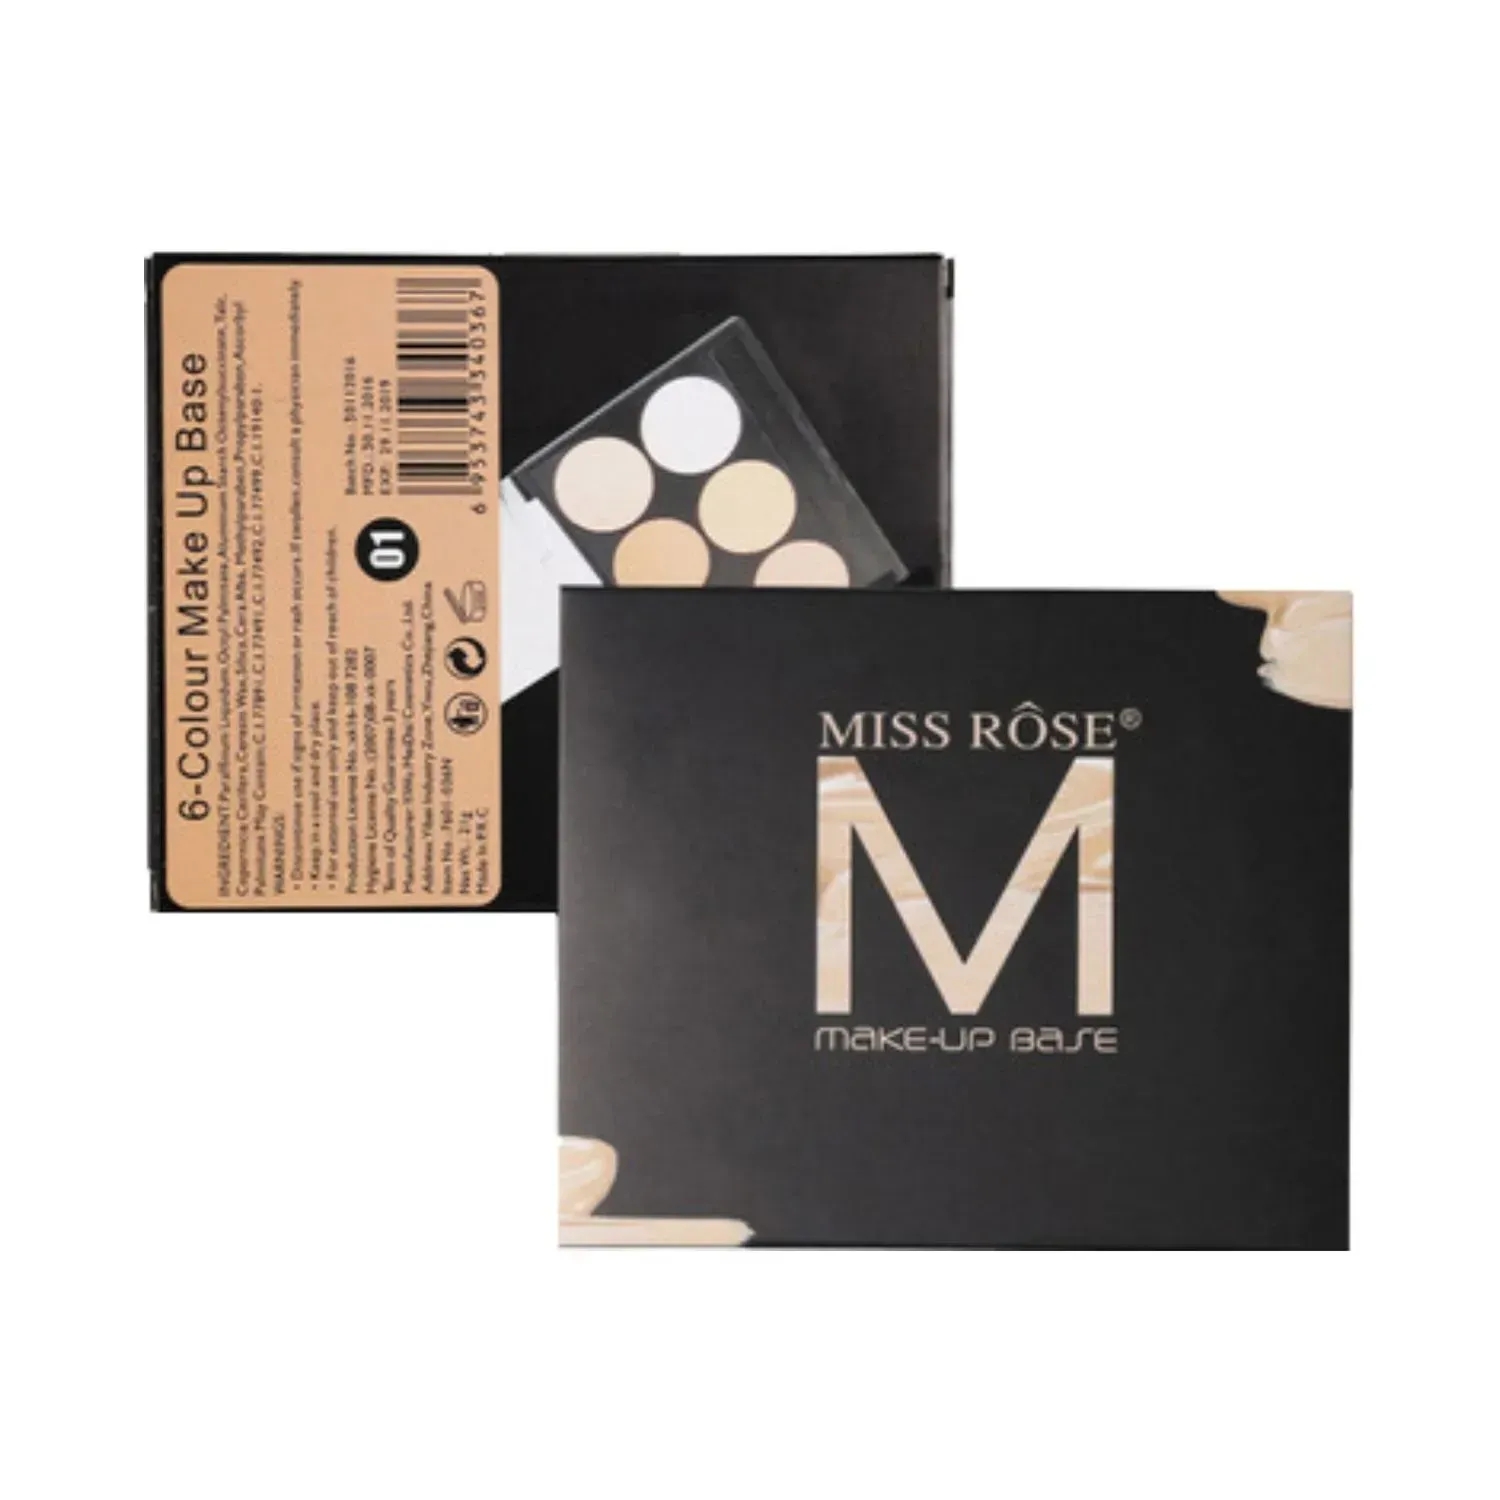 Miss Rose | Miss Rose 6 Color Ultra Makeup Base Palette - 01 Shade (21g)